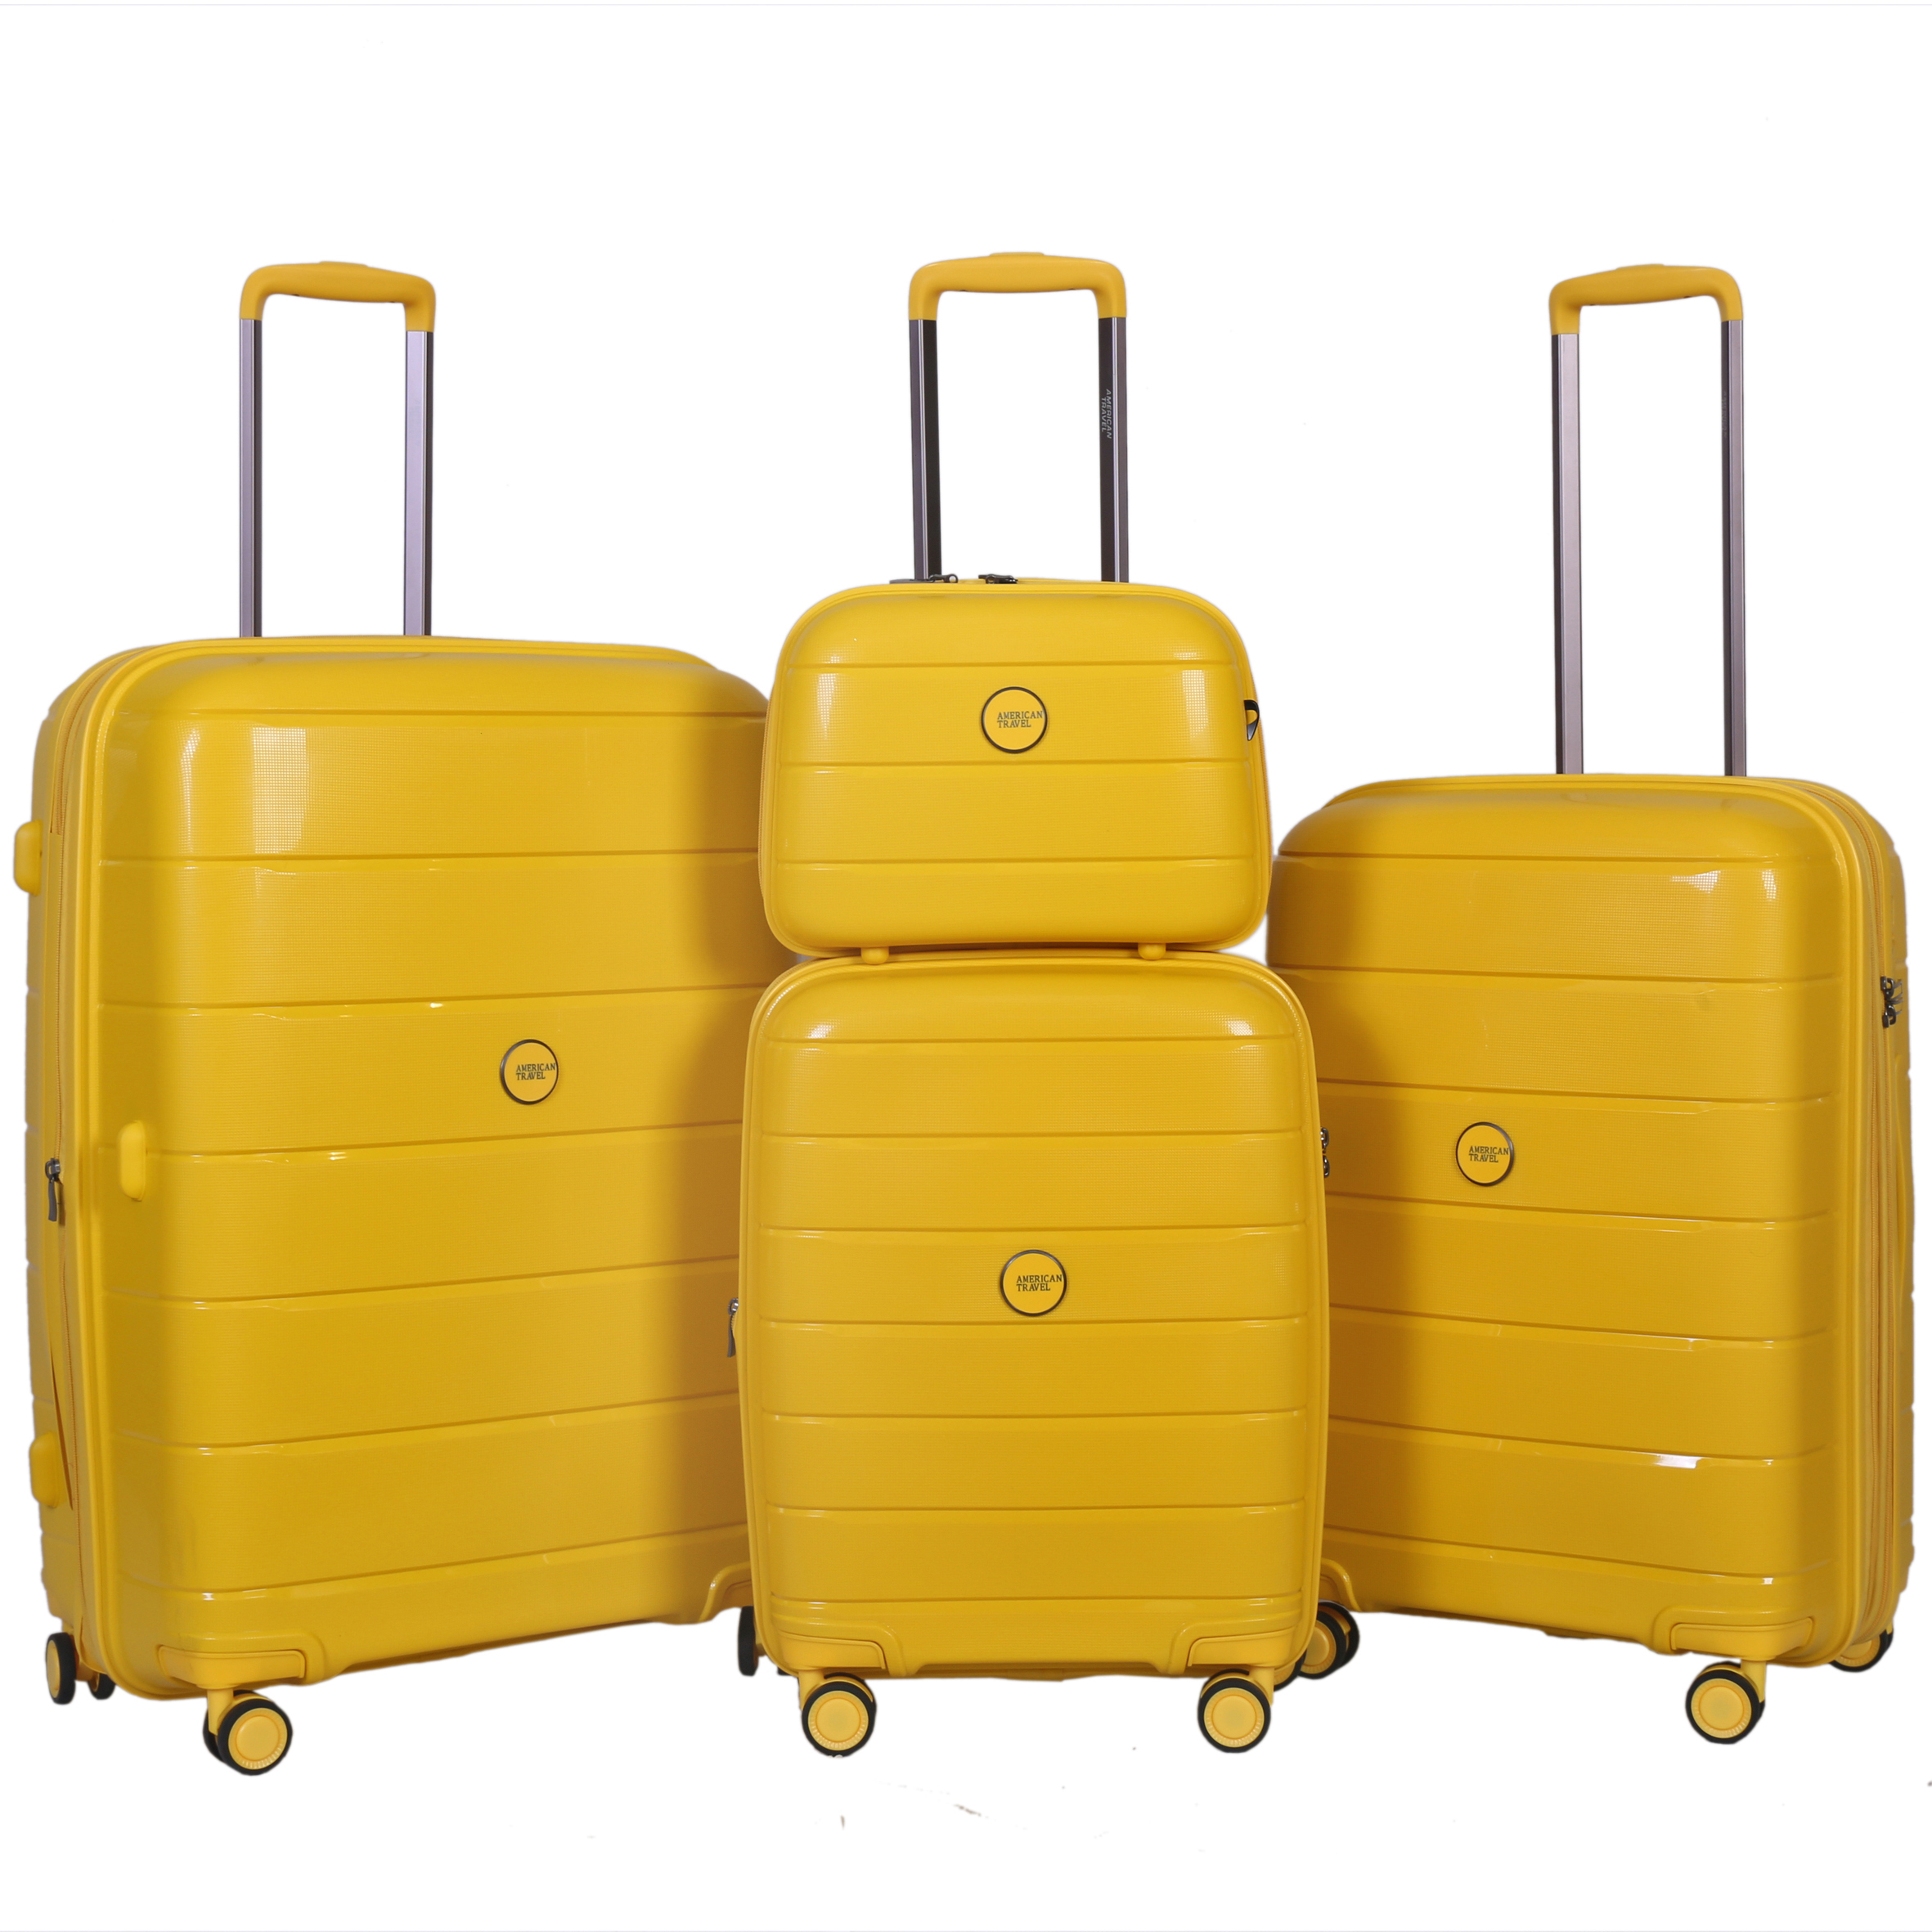 نکته خرید - قیمت روز چمدان امریکن تراول مدل D4488 مجموعه چهار عددی خرید